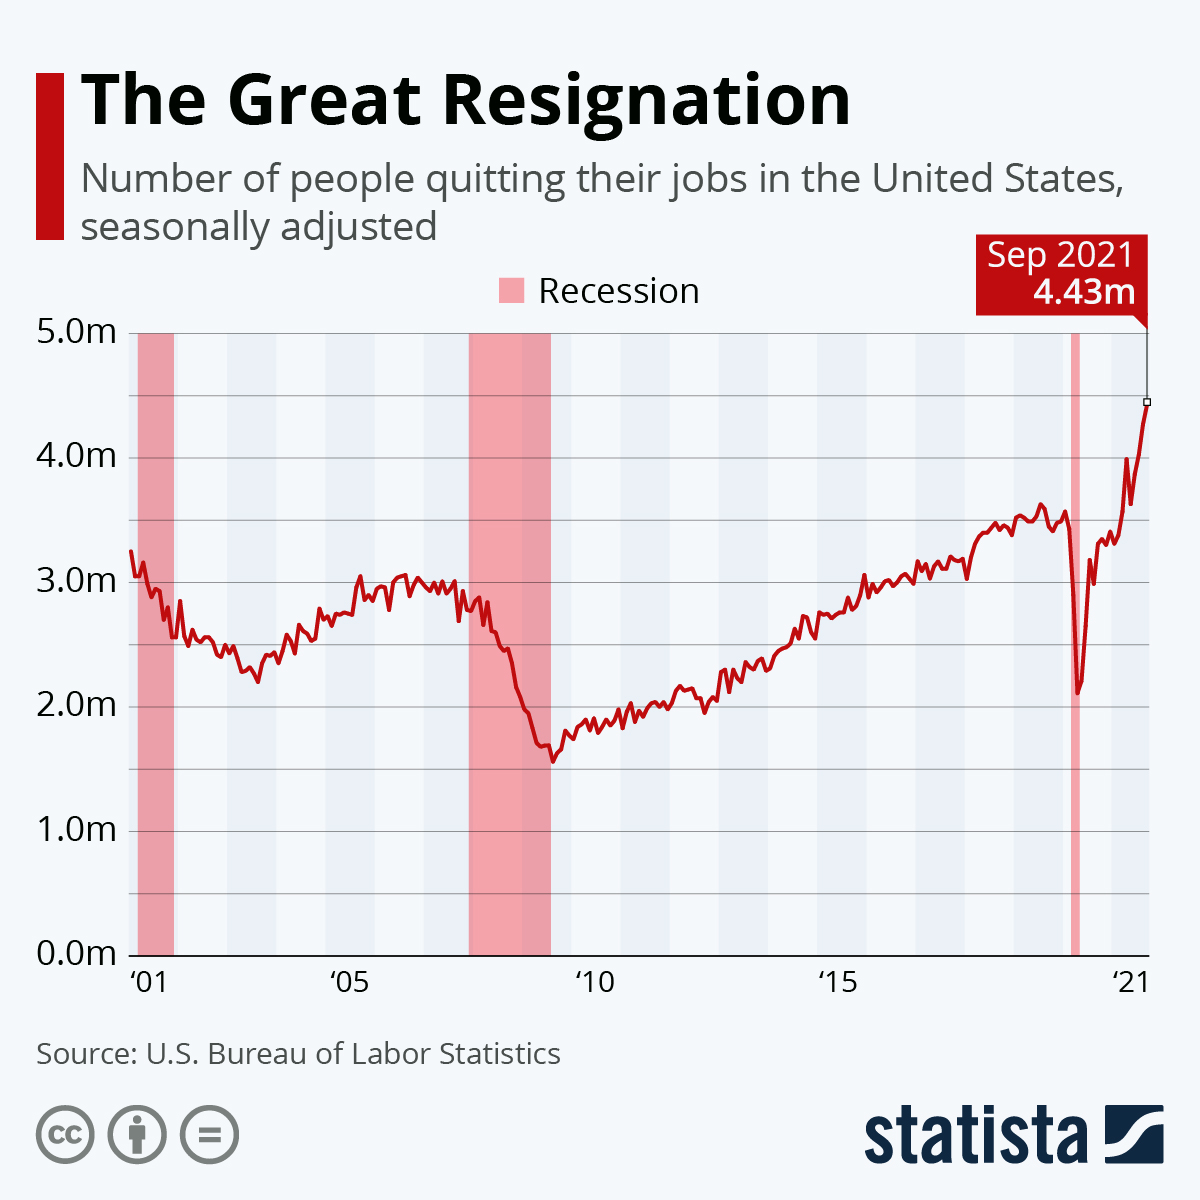 Le phénomène de "Great Resignation" aux États-Unis